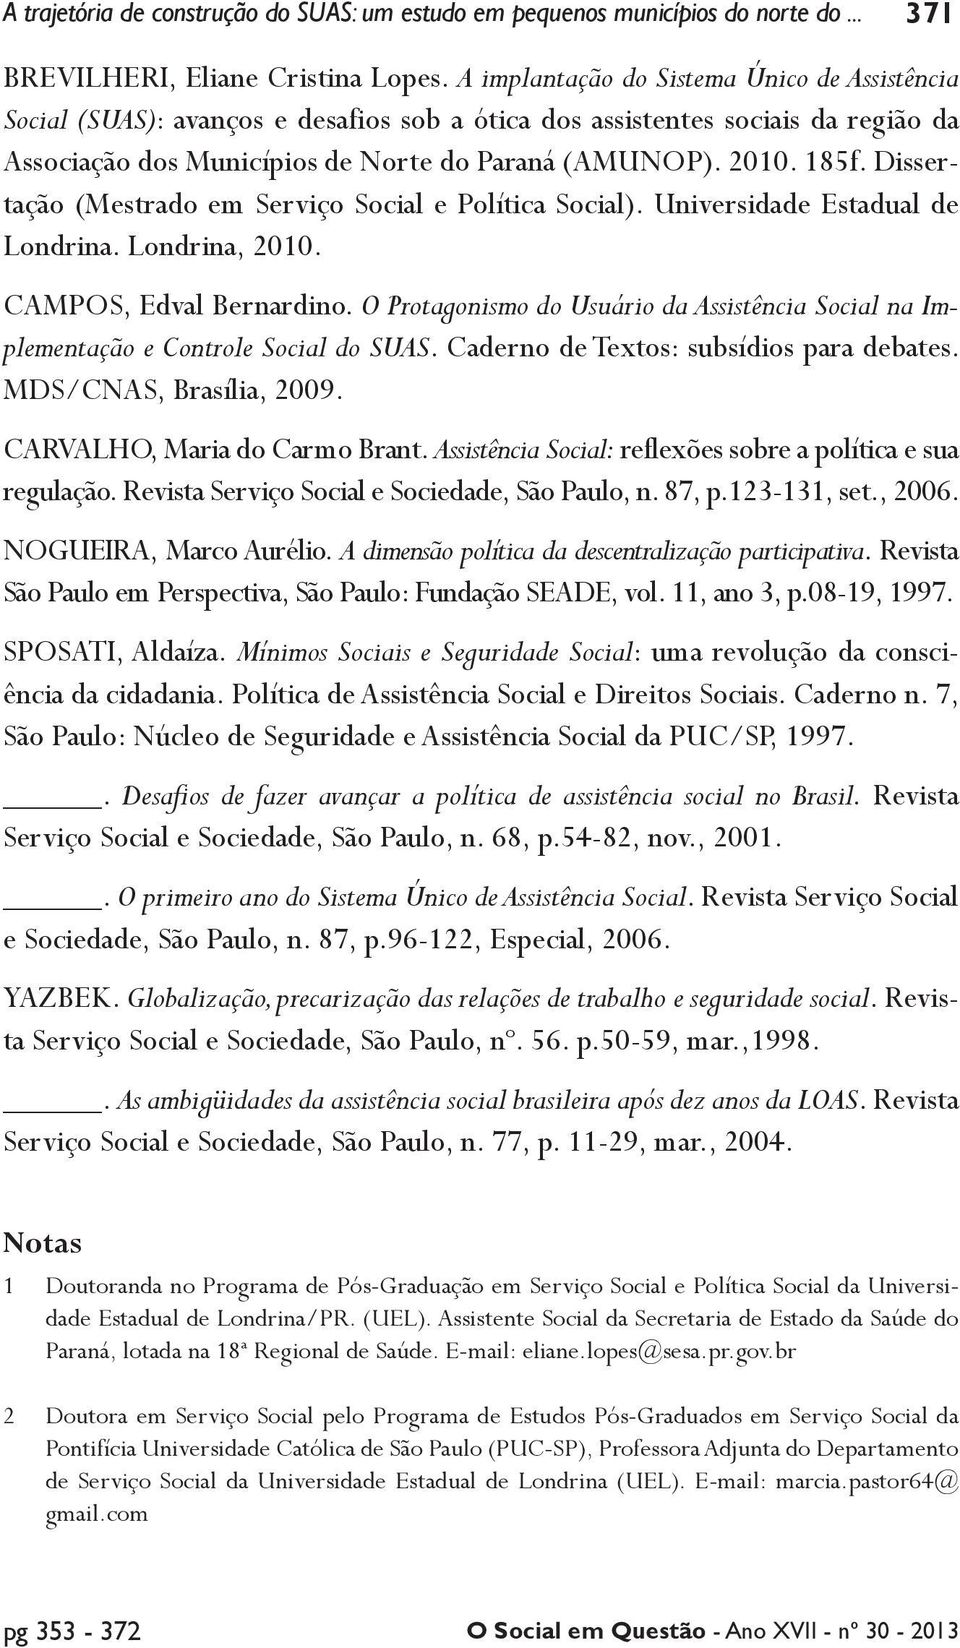 Dissertação (Mestrado em Serviço Social e Política Social). Universidade Estadual de Londrina. Londrina, 2010. CAMPOS, Edval Bernardino.